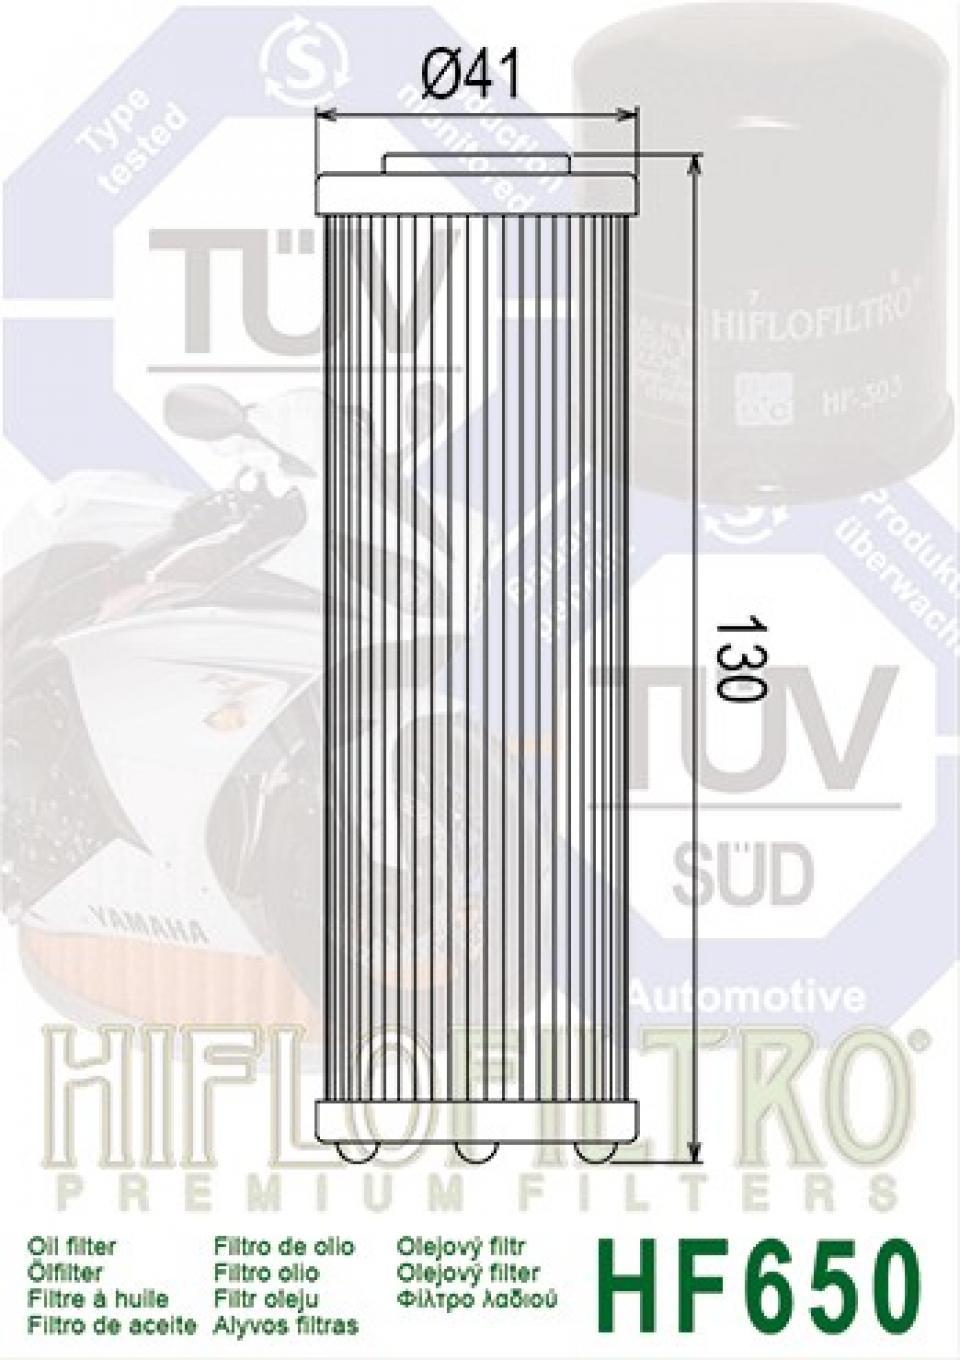 Filtre à huile Hiflofiltro pour Moto KTM 950 Adventure 2003 à 2006 HF650 équivalent HF158 Neuf